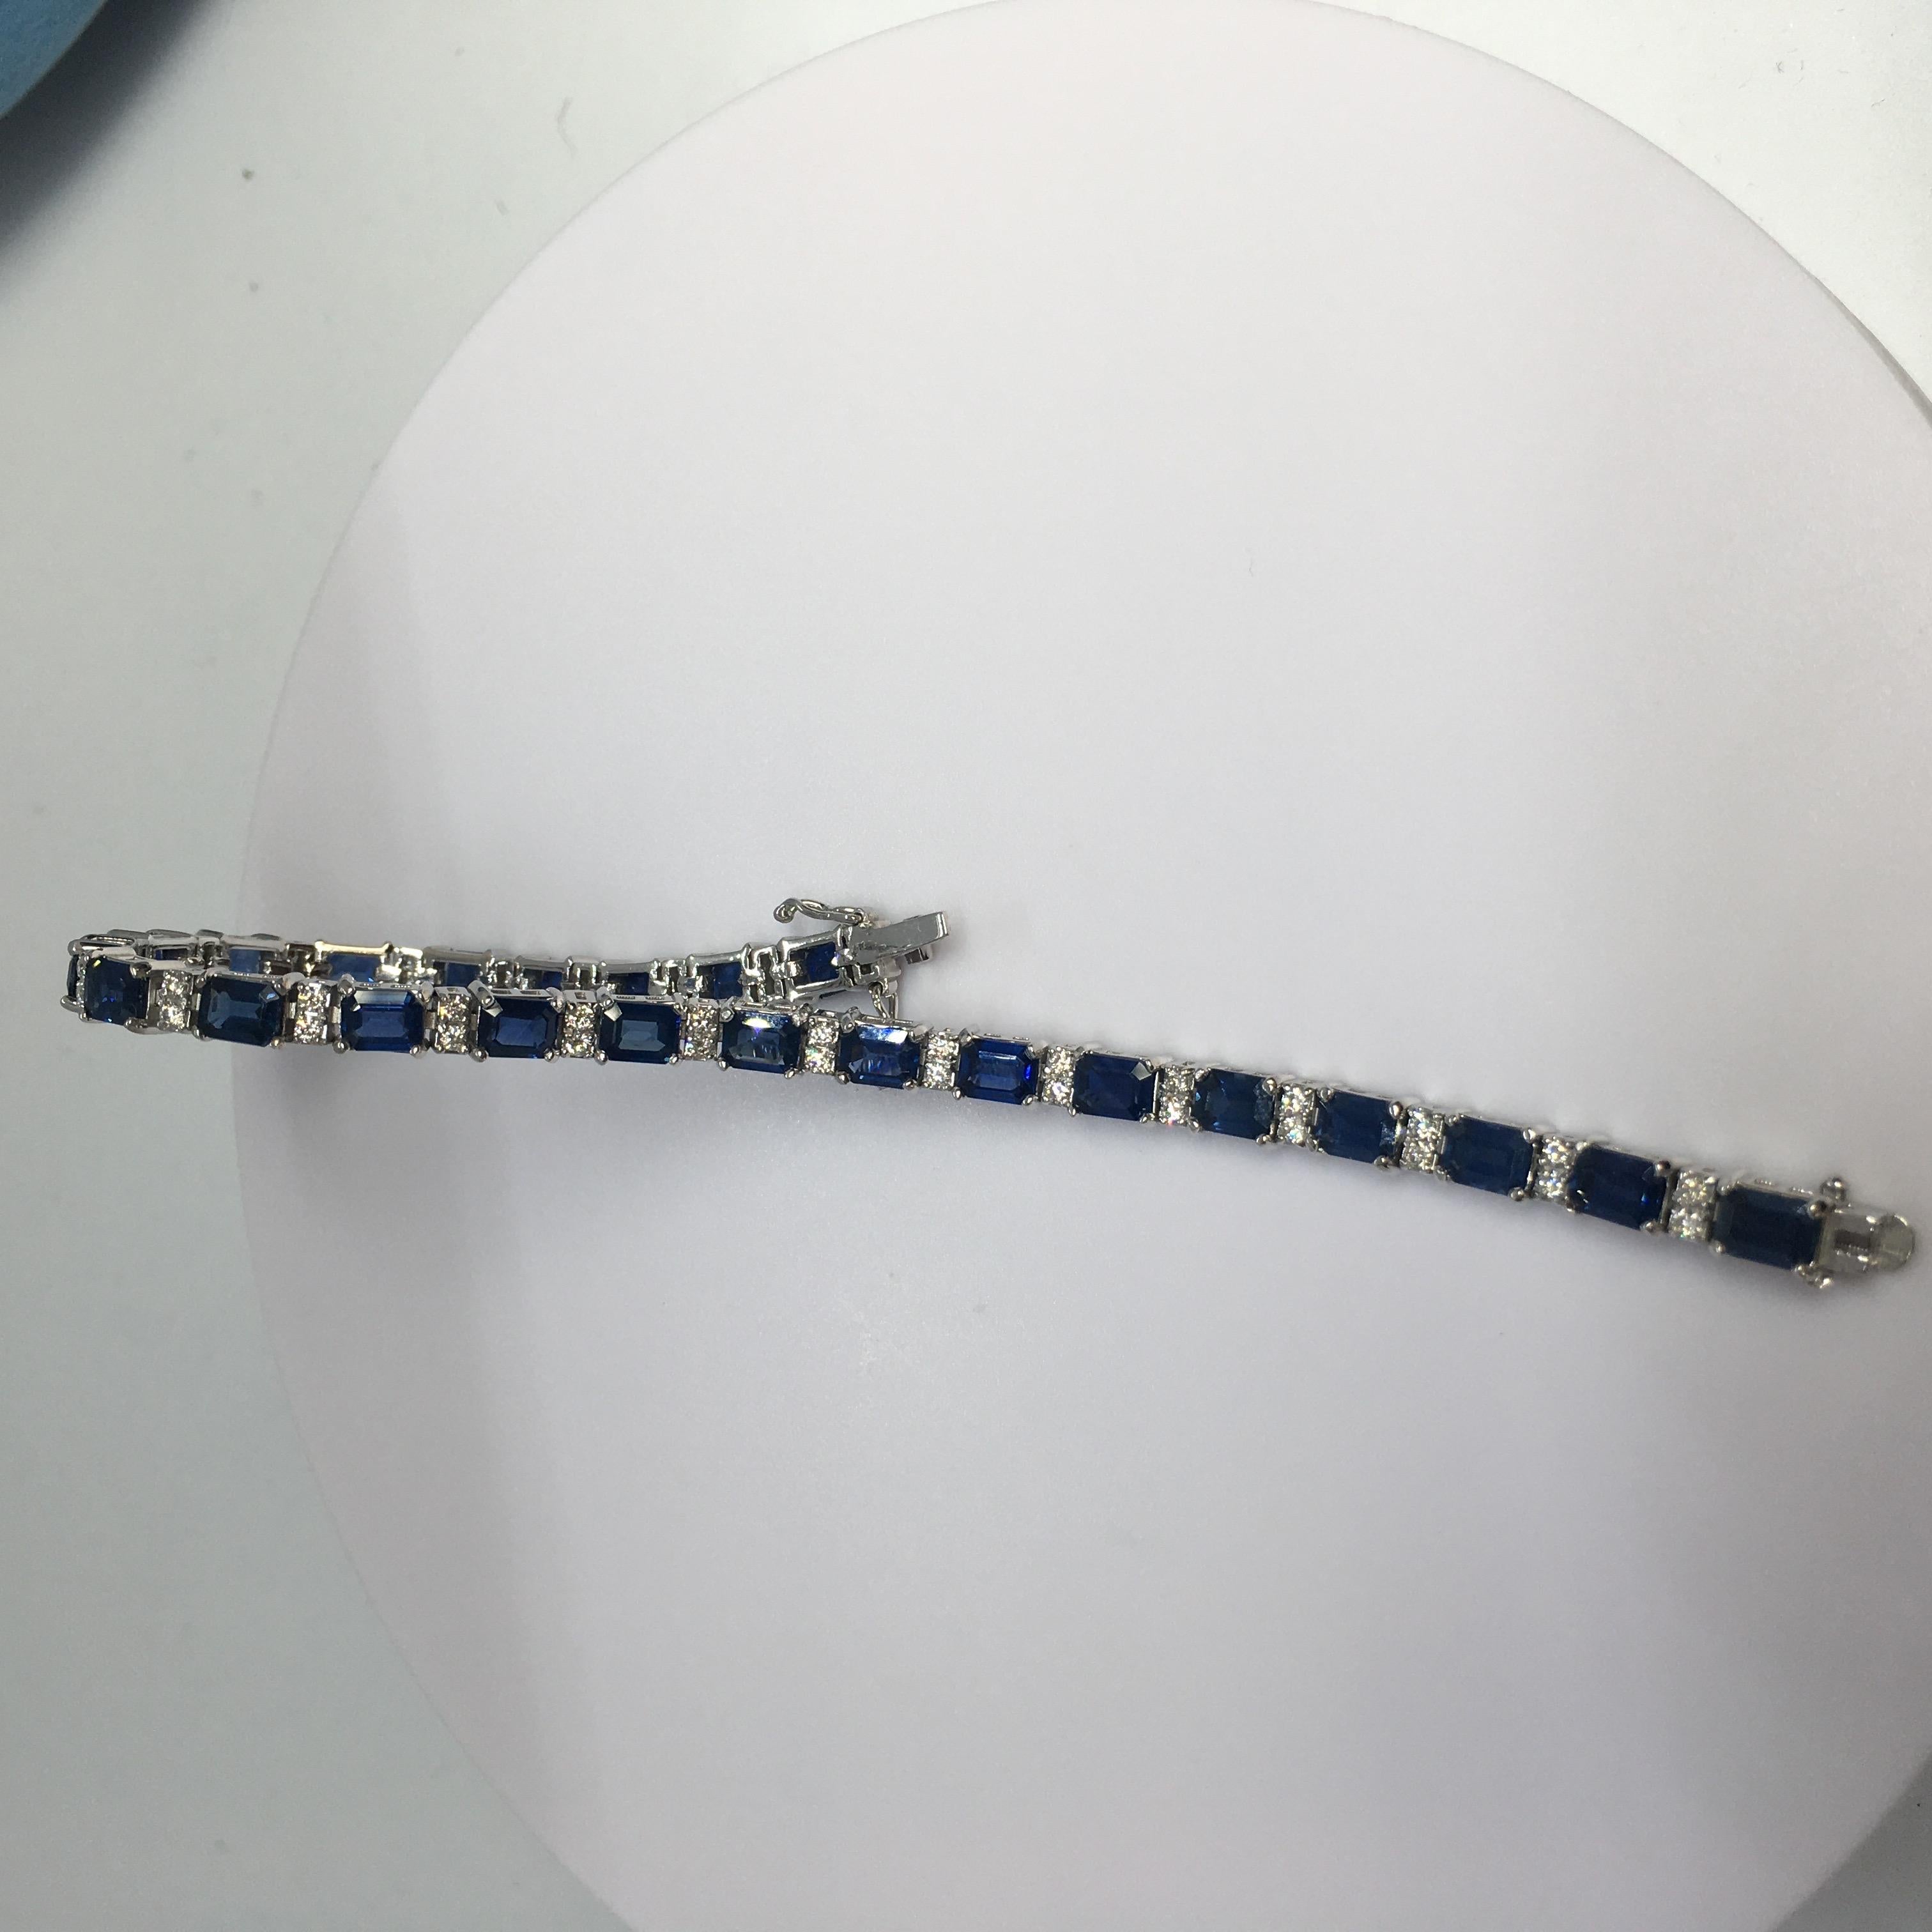 Natural Earth Mind Bracelet saphir bleu diamant or blanc 14K 

7.15 inch long 14K White Gold
Poids 15,4 grammes, double sécurité 
23 pièces de saphirs bleus naturels de taille émeraude mesurant 4 mm par 5,5 mm poids total de 10 carats 
46 diamants